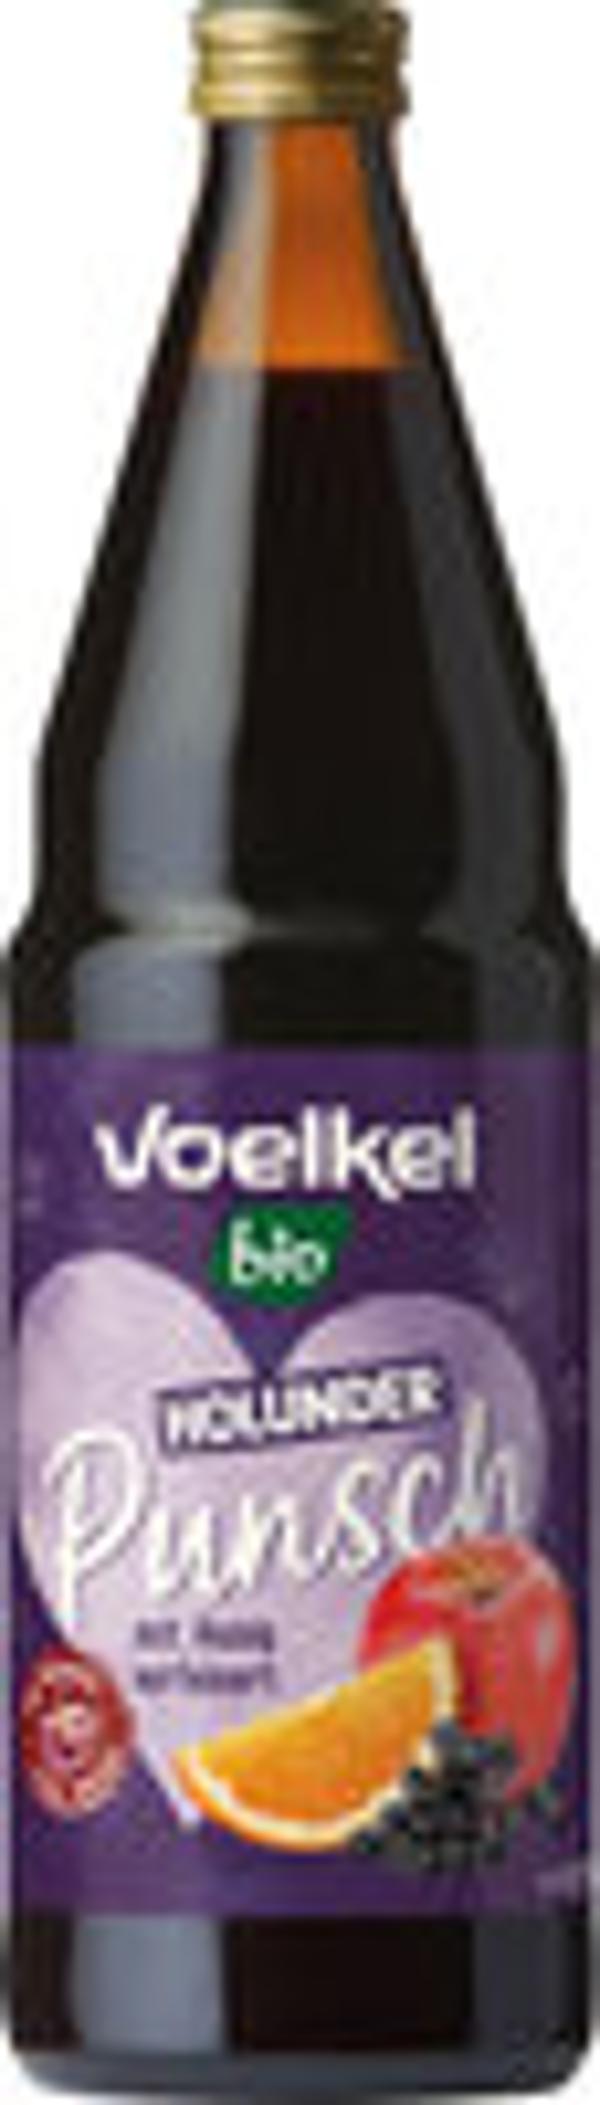 Produktfoto zu Holunder Punsch Voelkel 0,75L alkoholfrei